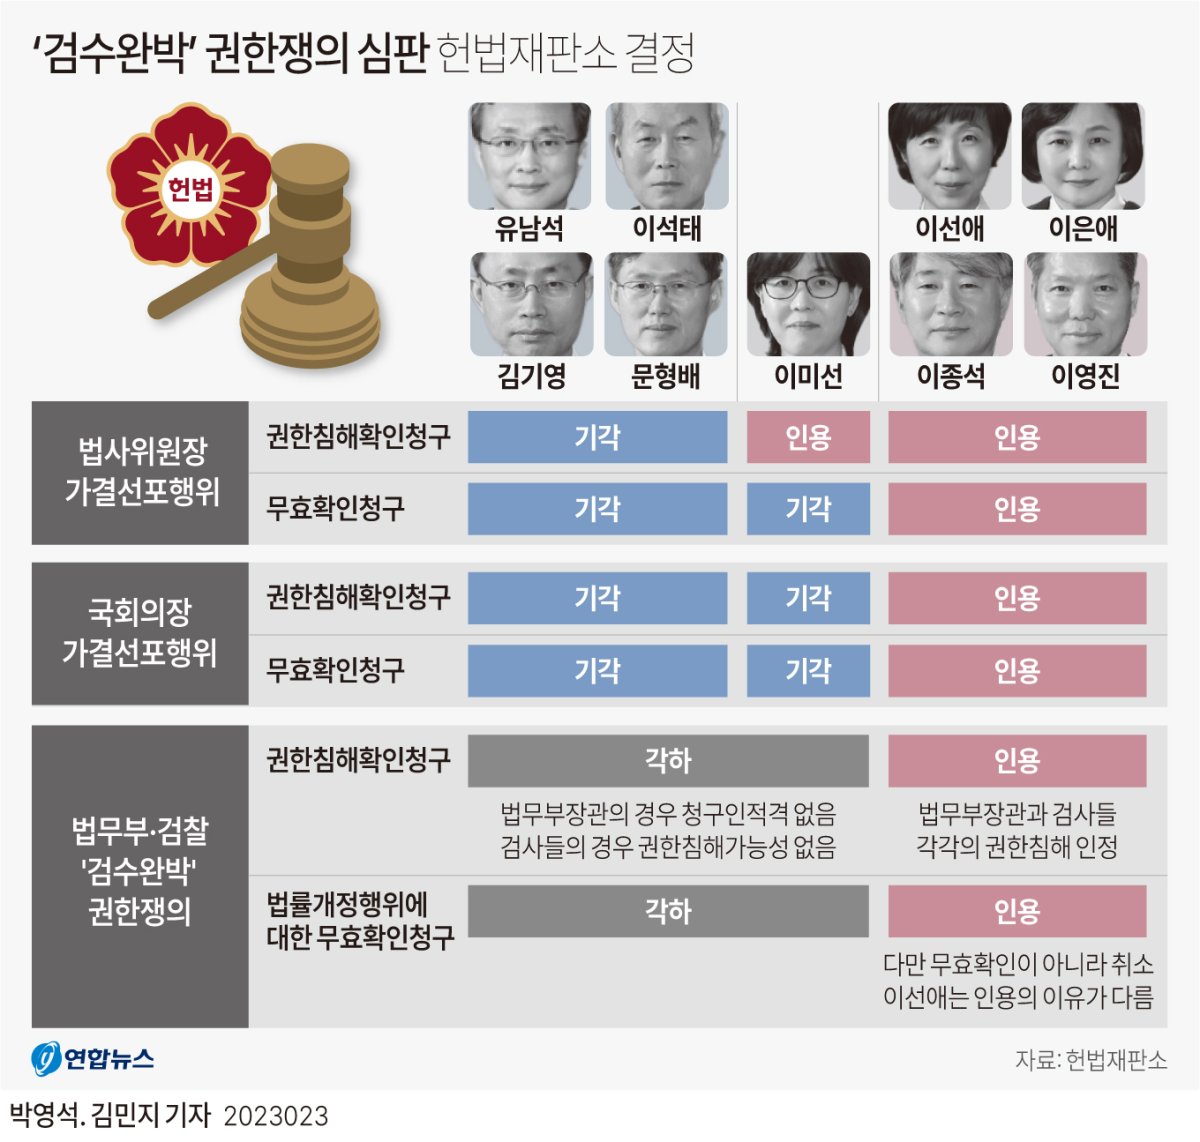 [그래픽] '검수완박' 권한쟁의 심판 헌법재판소 결정